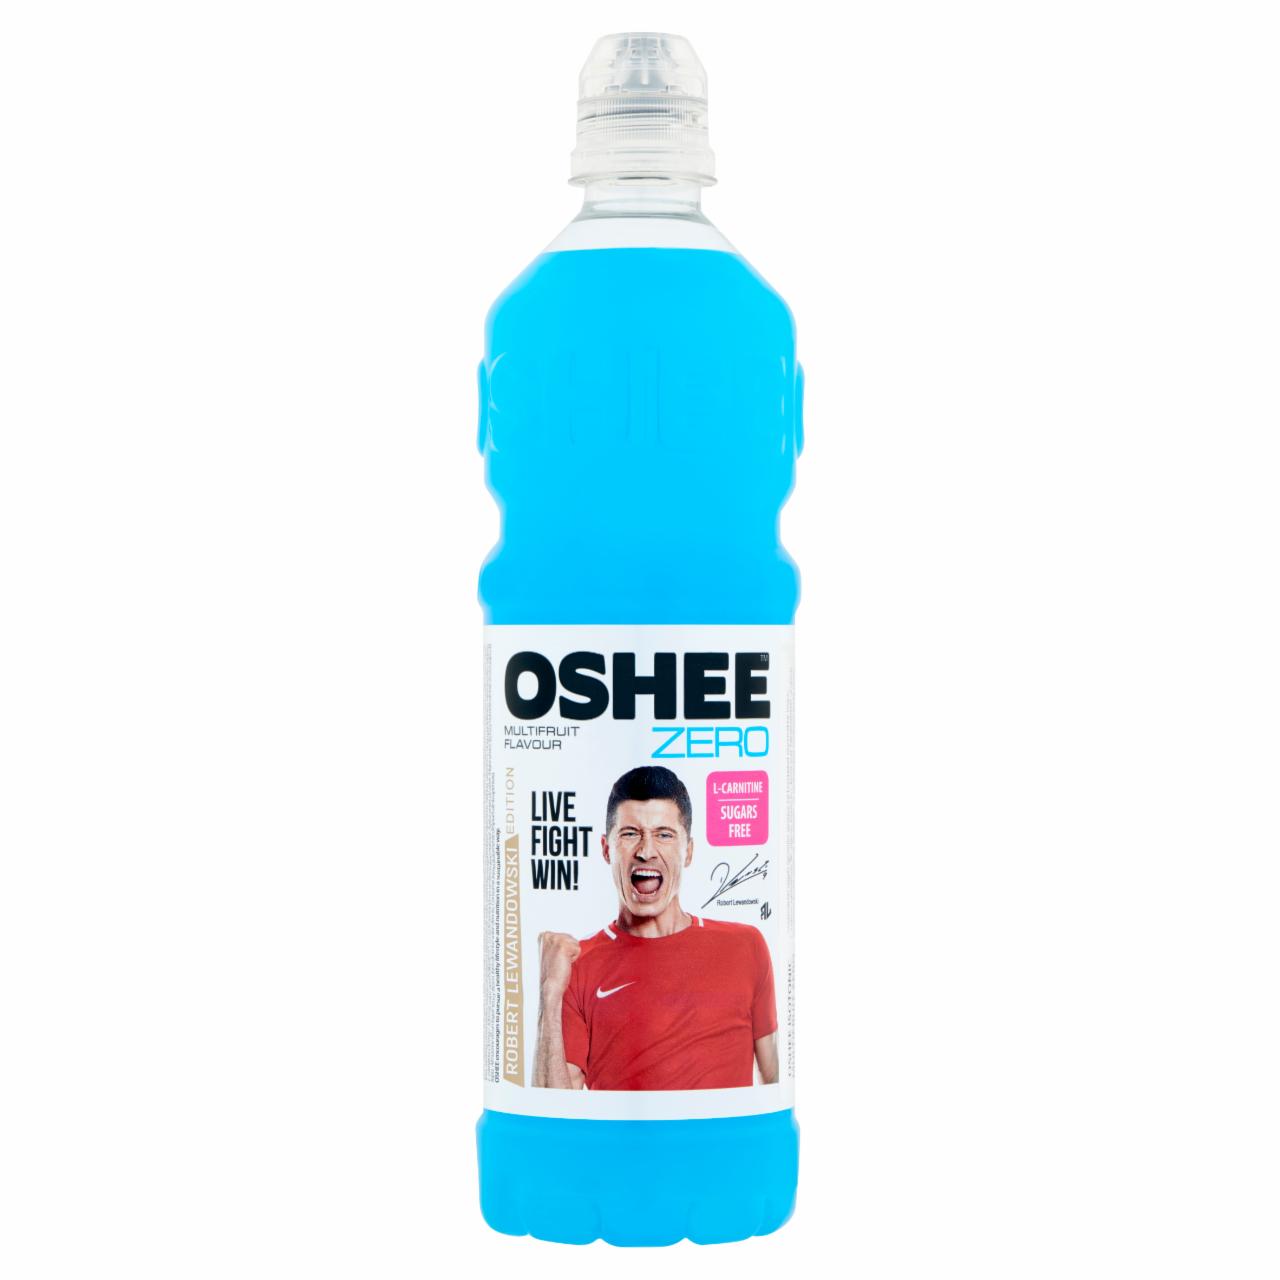 Képek - Oshee Zero szénsavmentes vegyes gyümölcs ízesítésű ital hozzáadott vitaminokkal 0,75 l